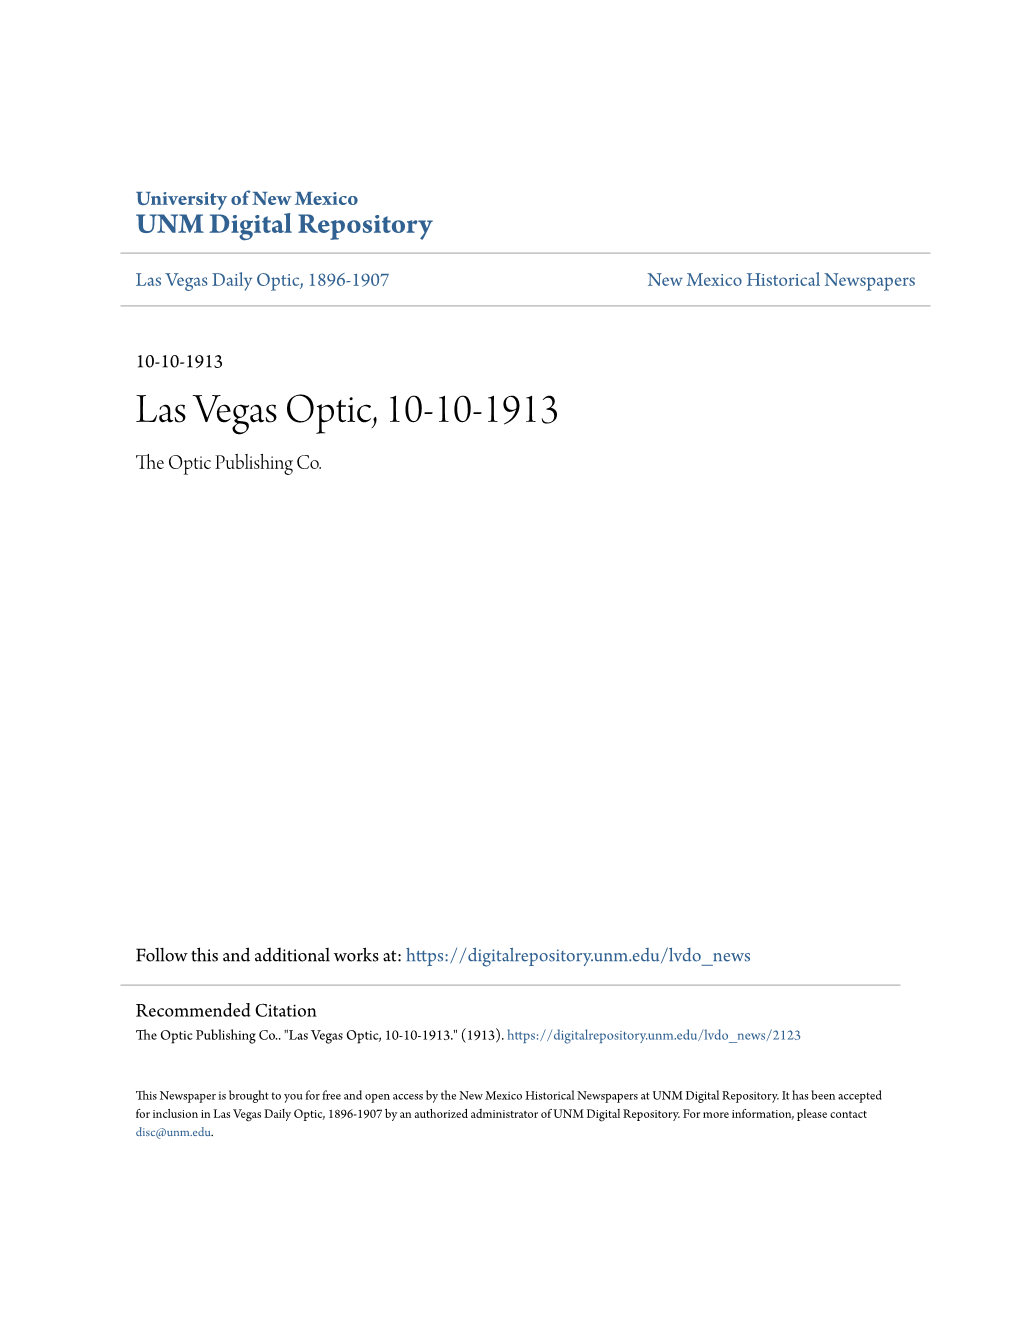 Las Vegas Optic, 10-10-1913 the Optic Publishing Co